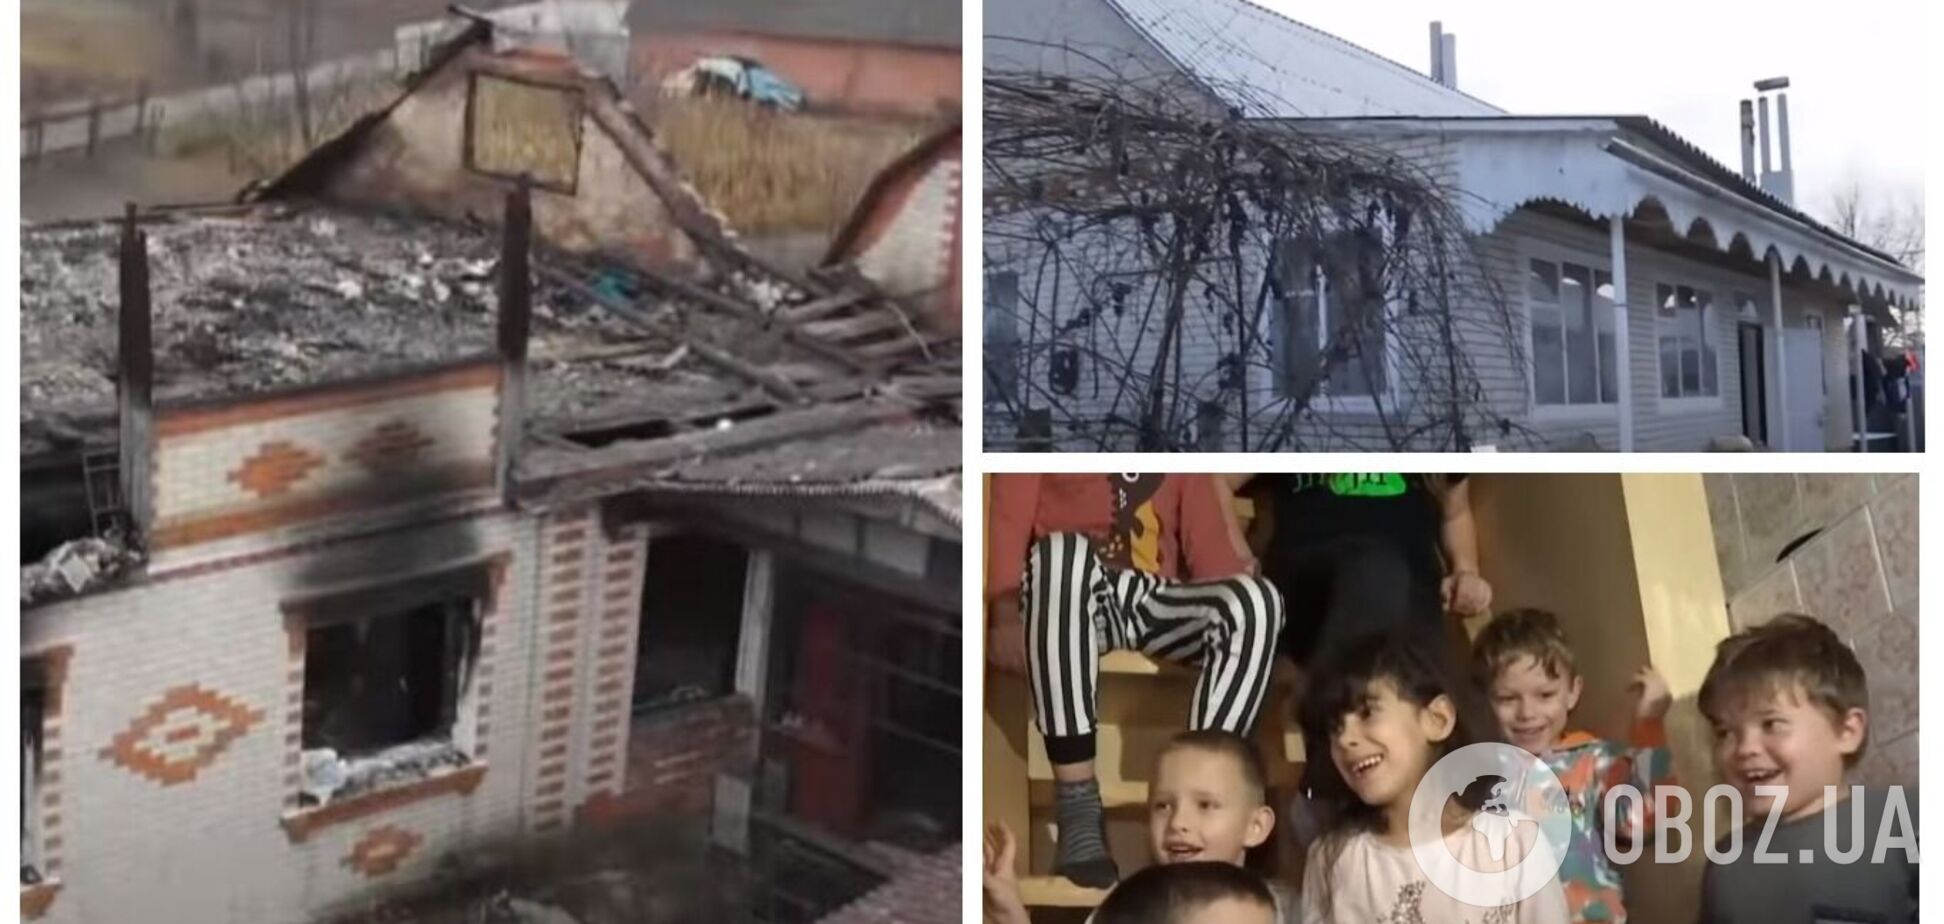 На Сумщині сім'ї із 14 дітьми, у яких згорів будинок, зібрали кошти на нове житло. Відео